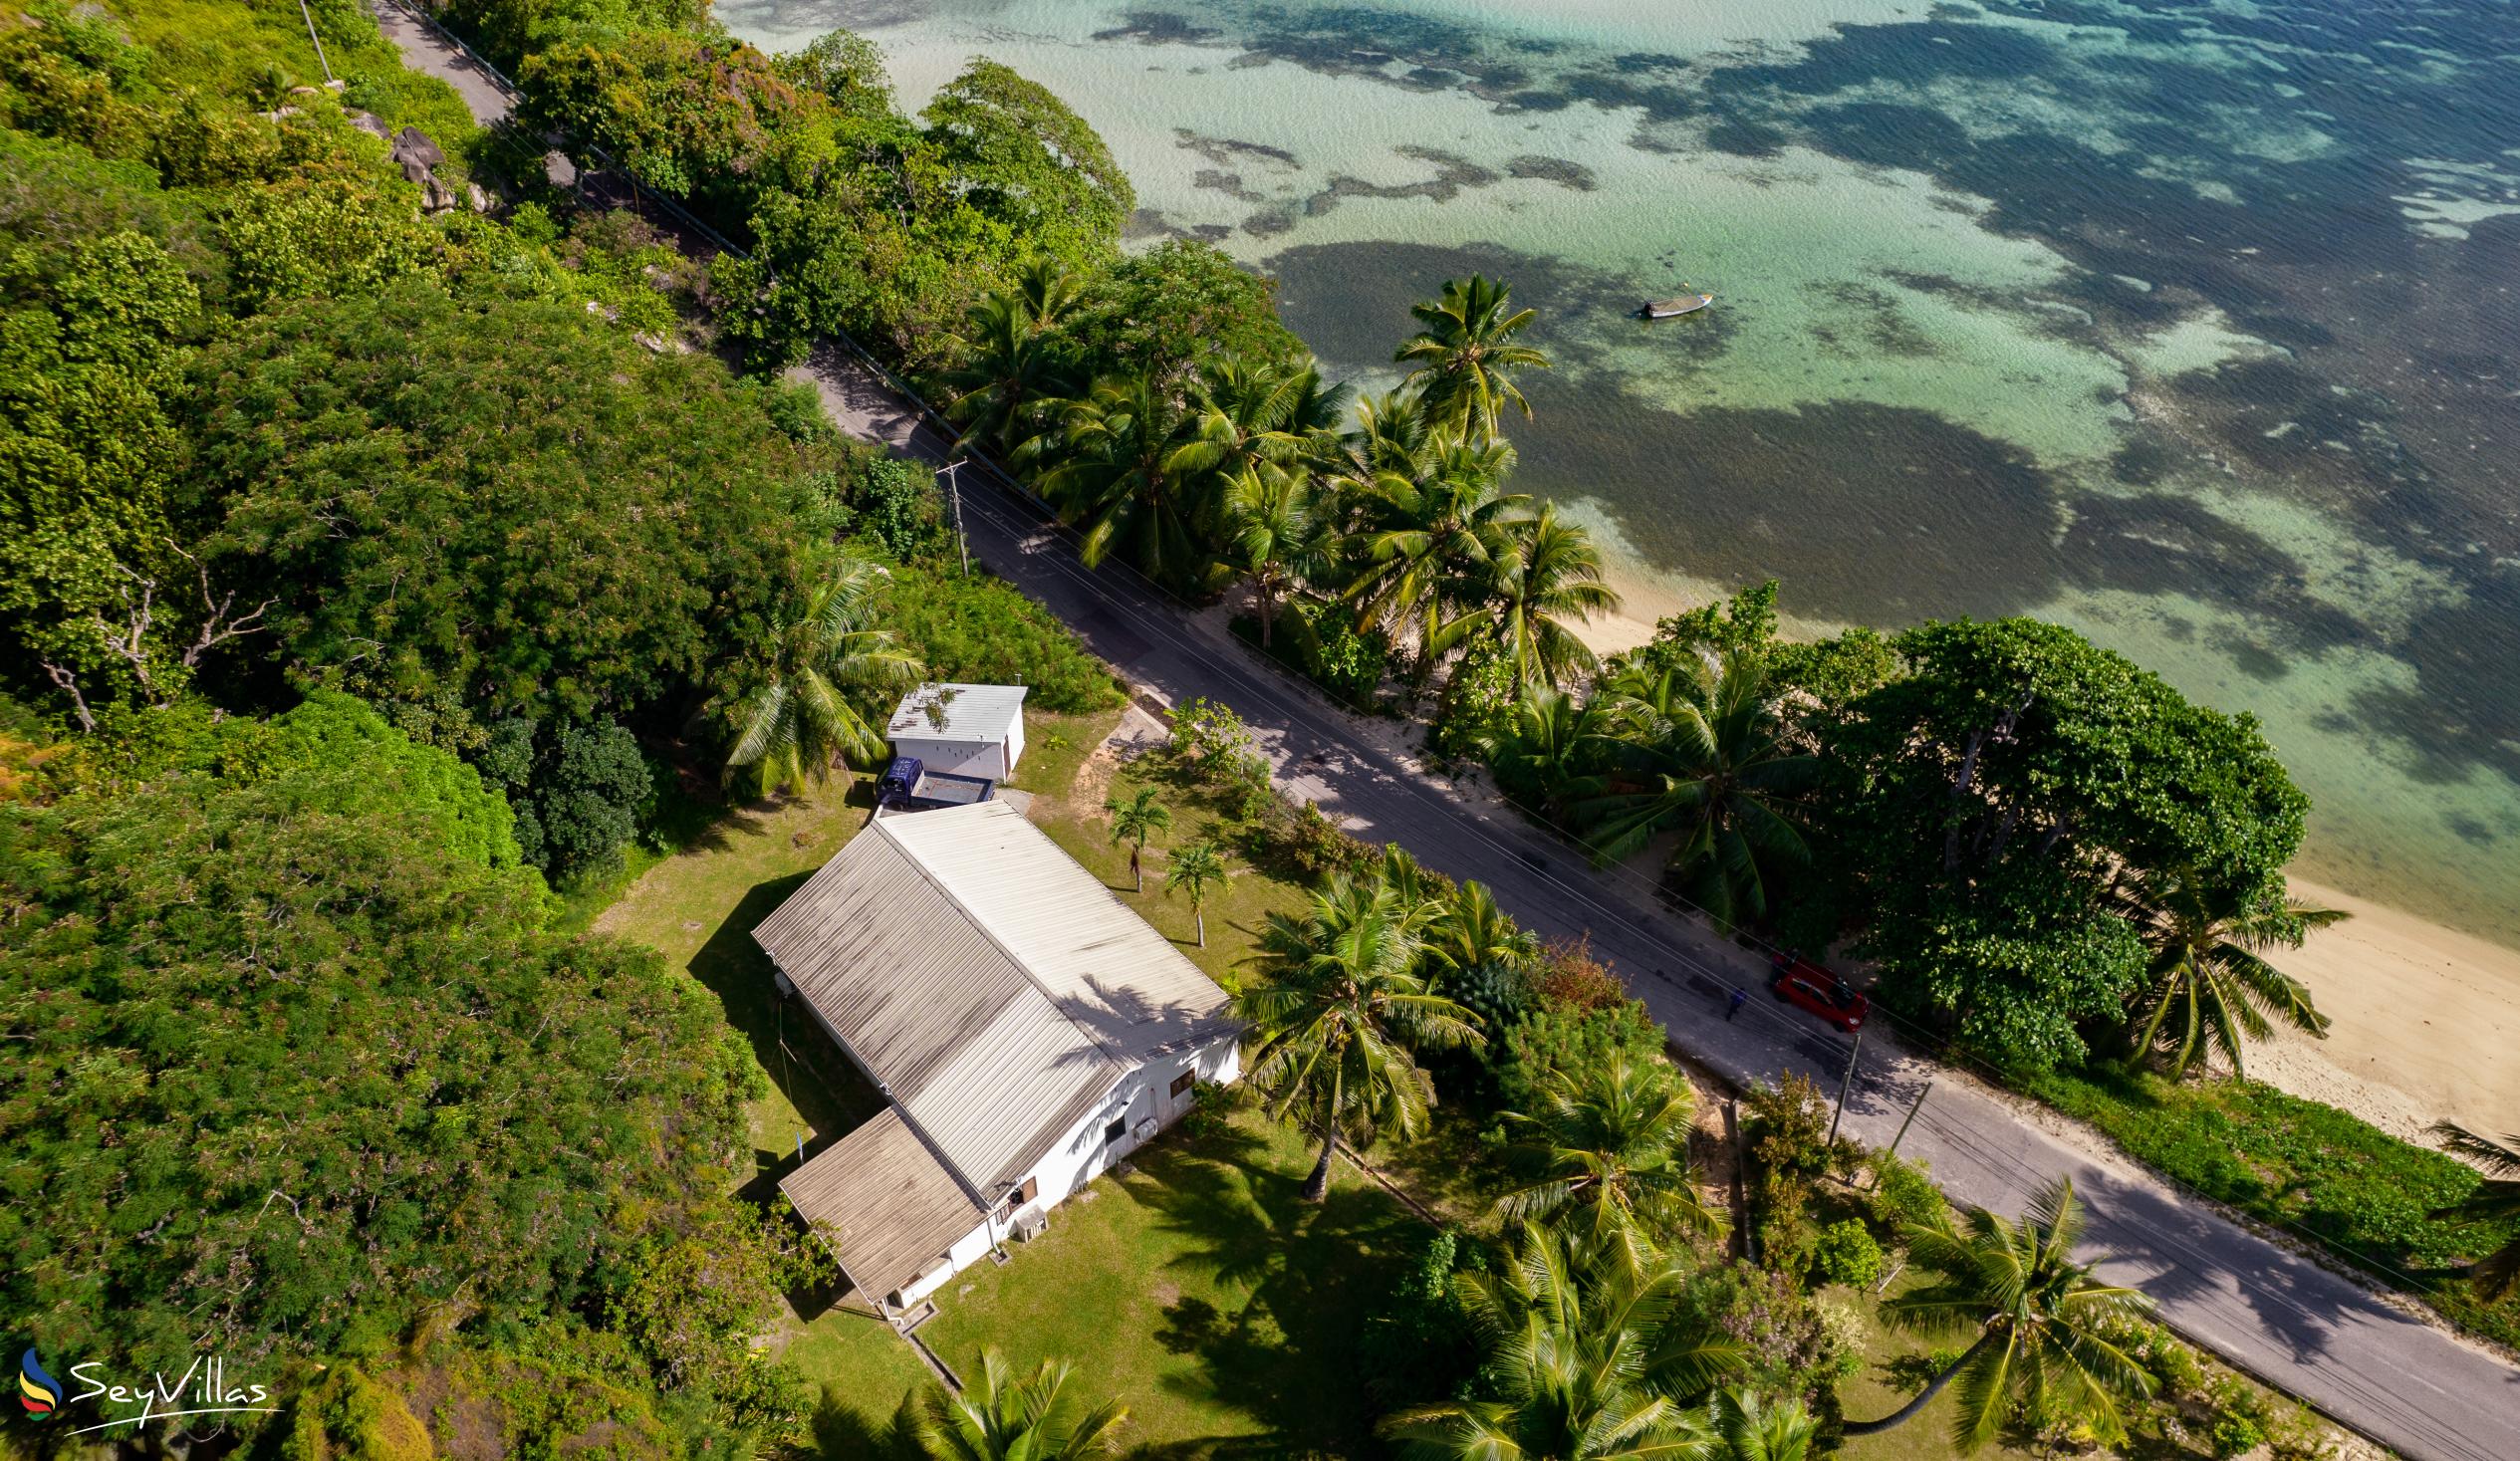 Foto 3: Villa Zananas - Aussenbereich - Praslin (Seychellen)